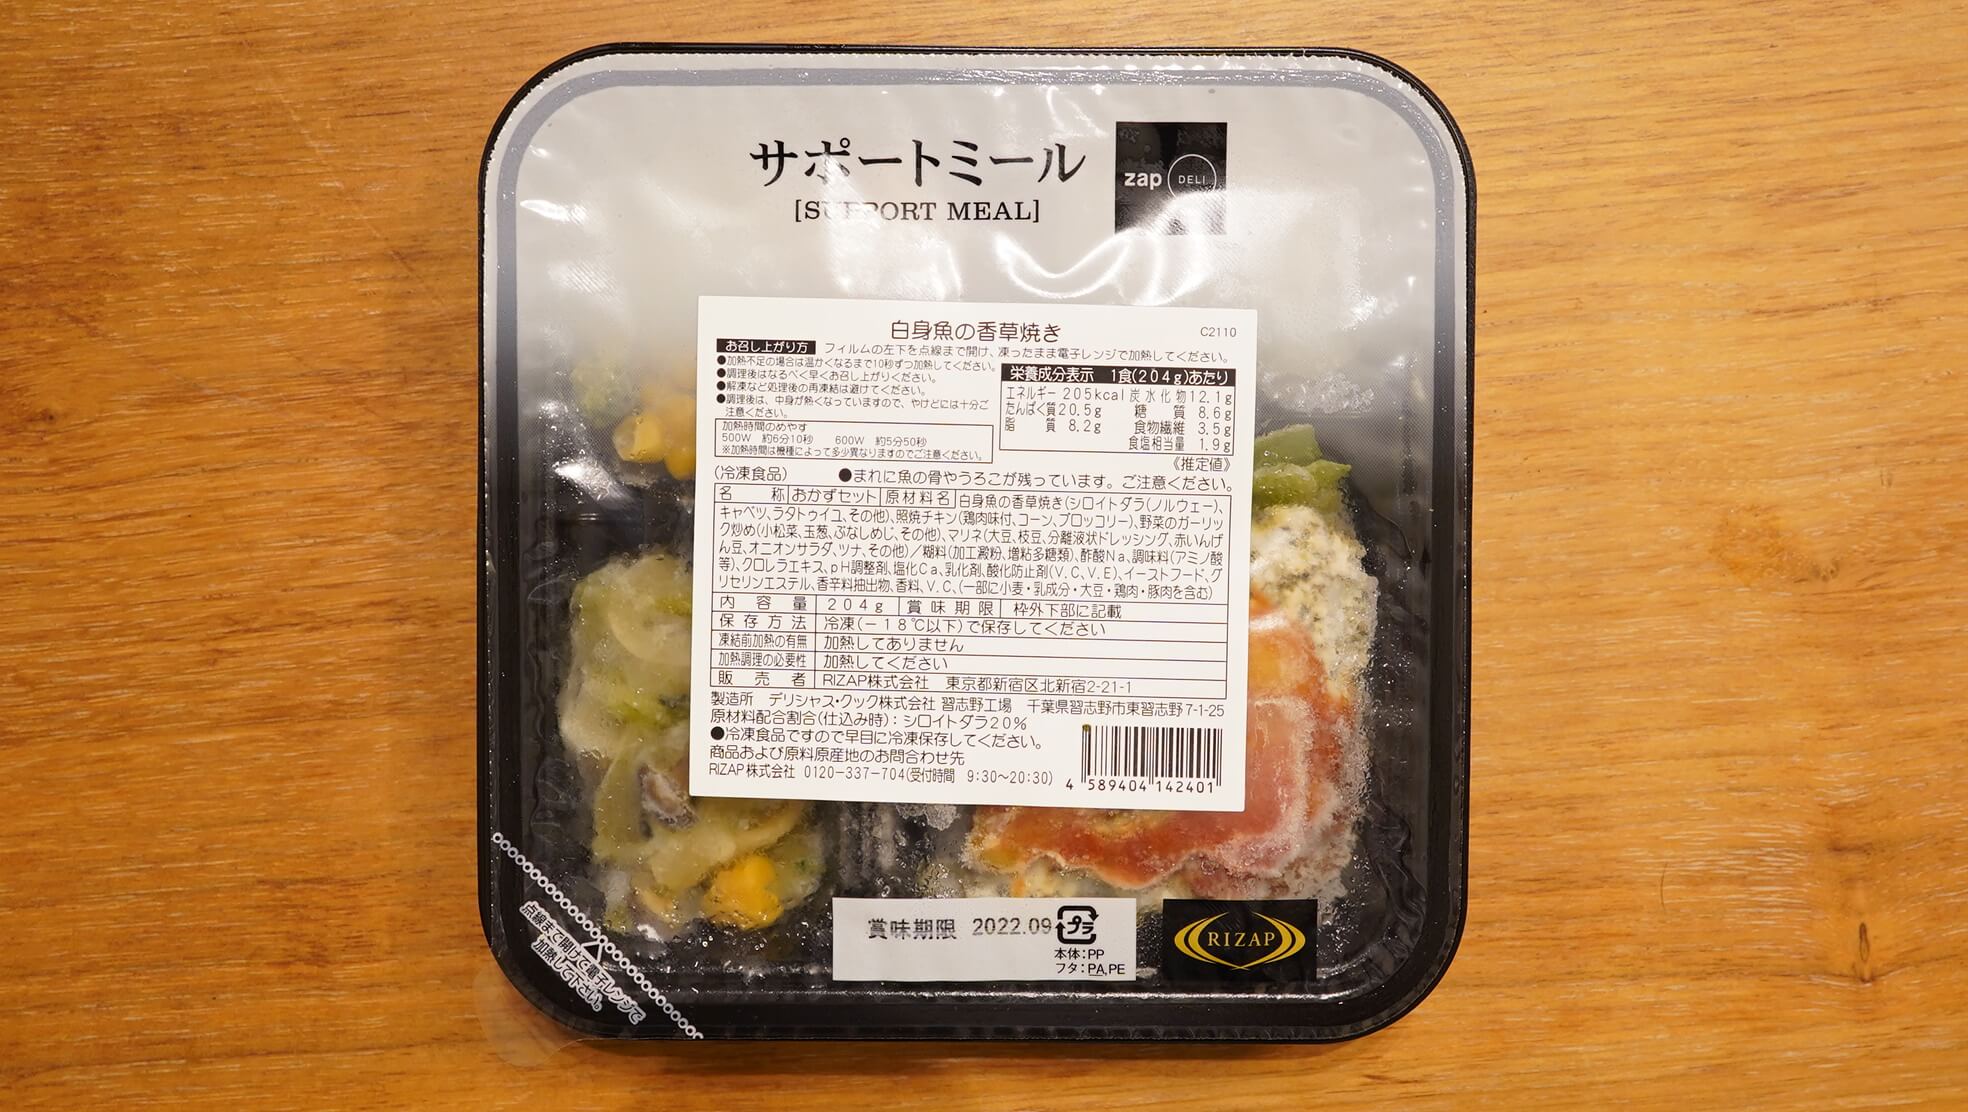 ライザップの冷凍弁当・サポートミール「白身魚の香草焼き」のパッケージ写真